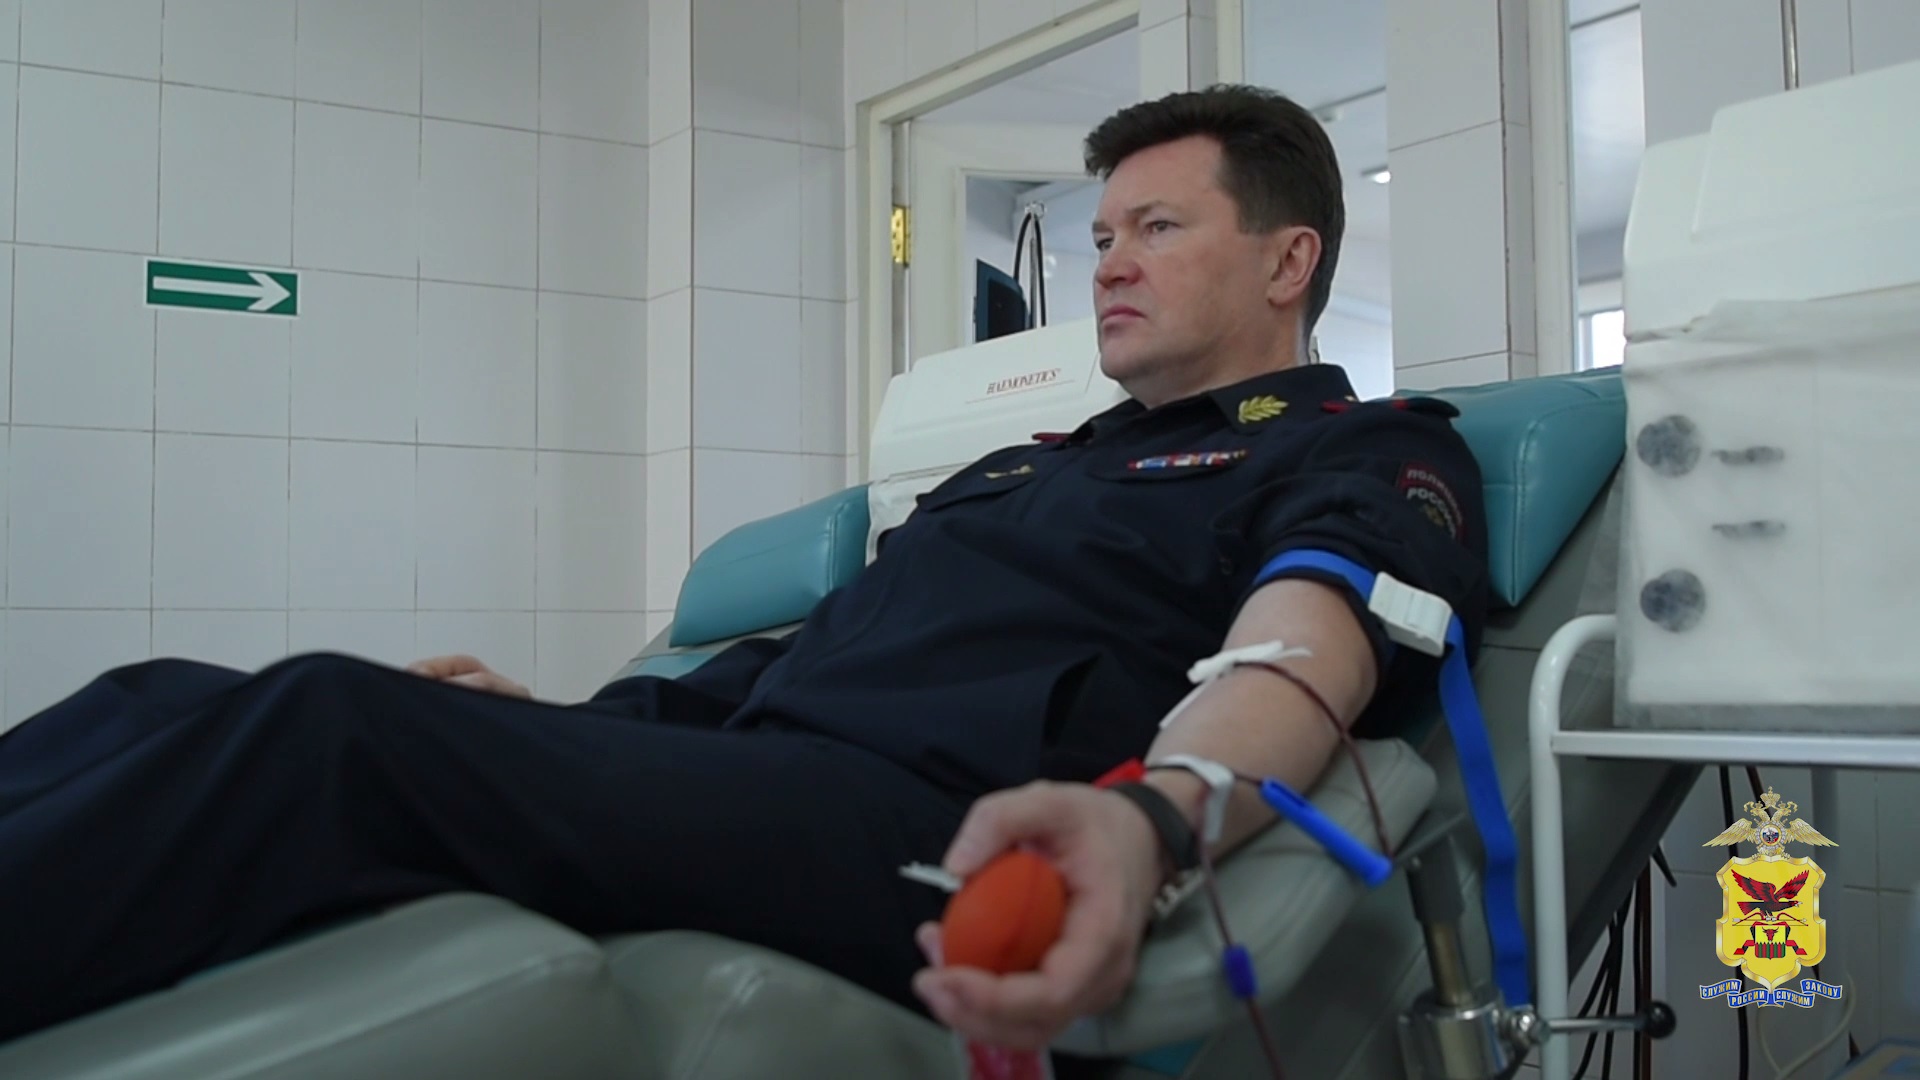 Руководители и сотрудники УМВД России по Забайкальскому краю пополнили банк донорской крови